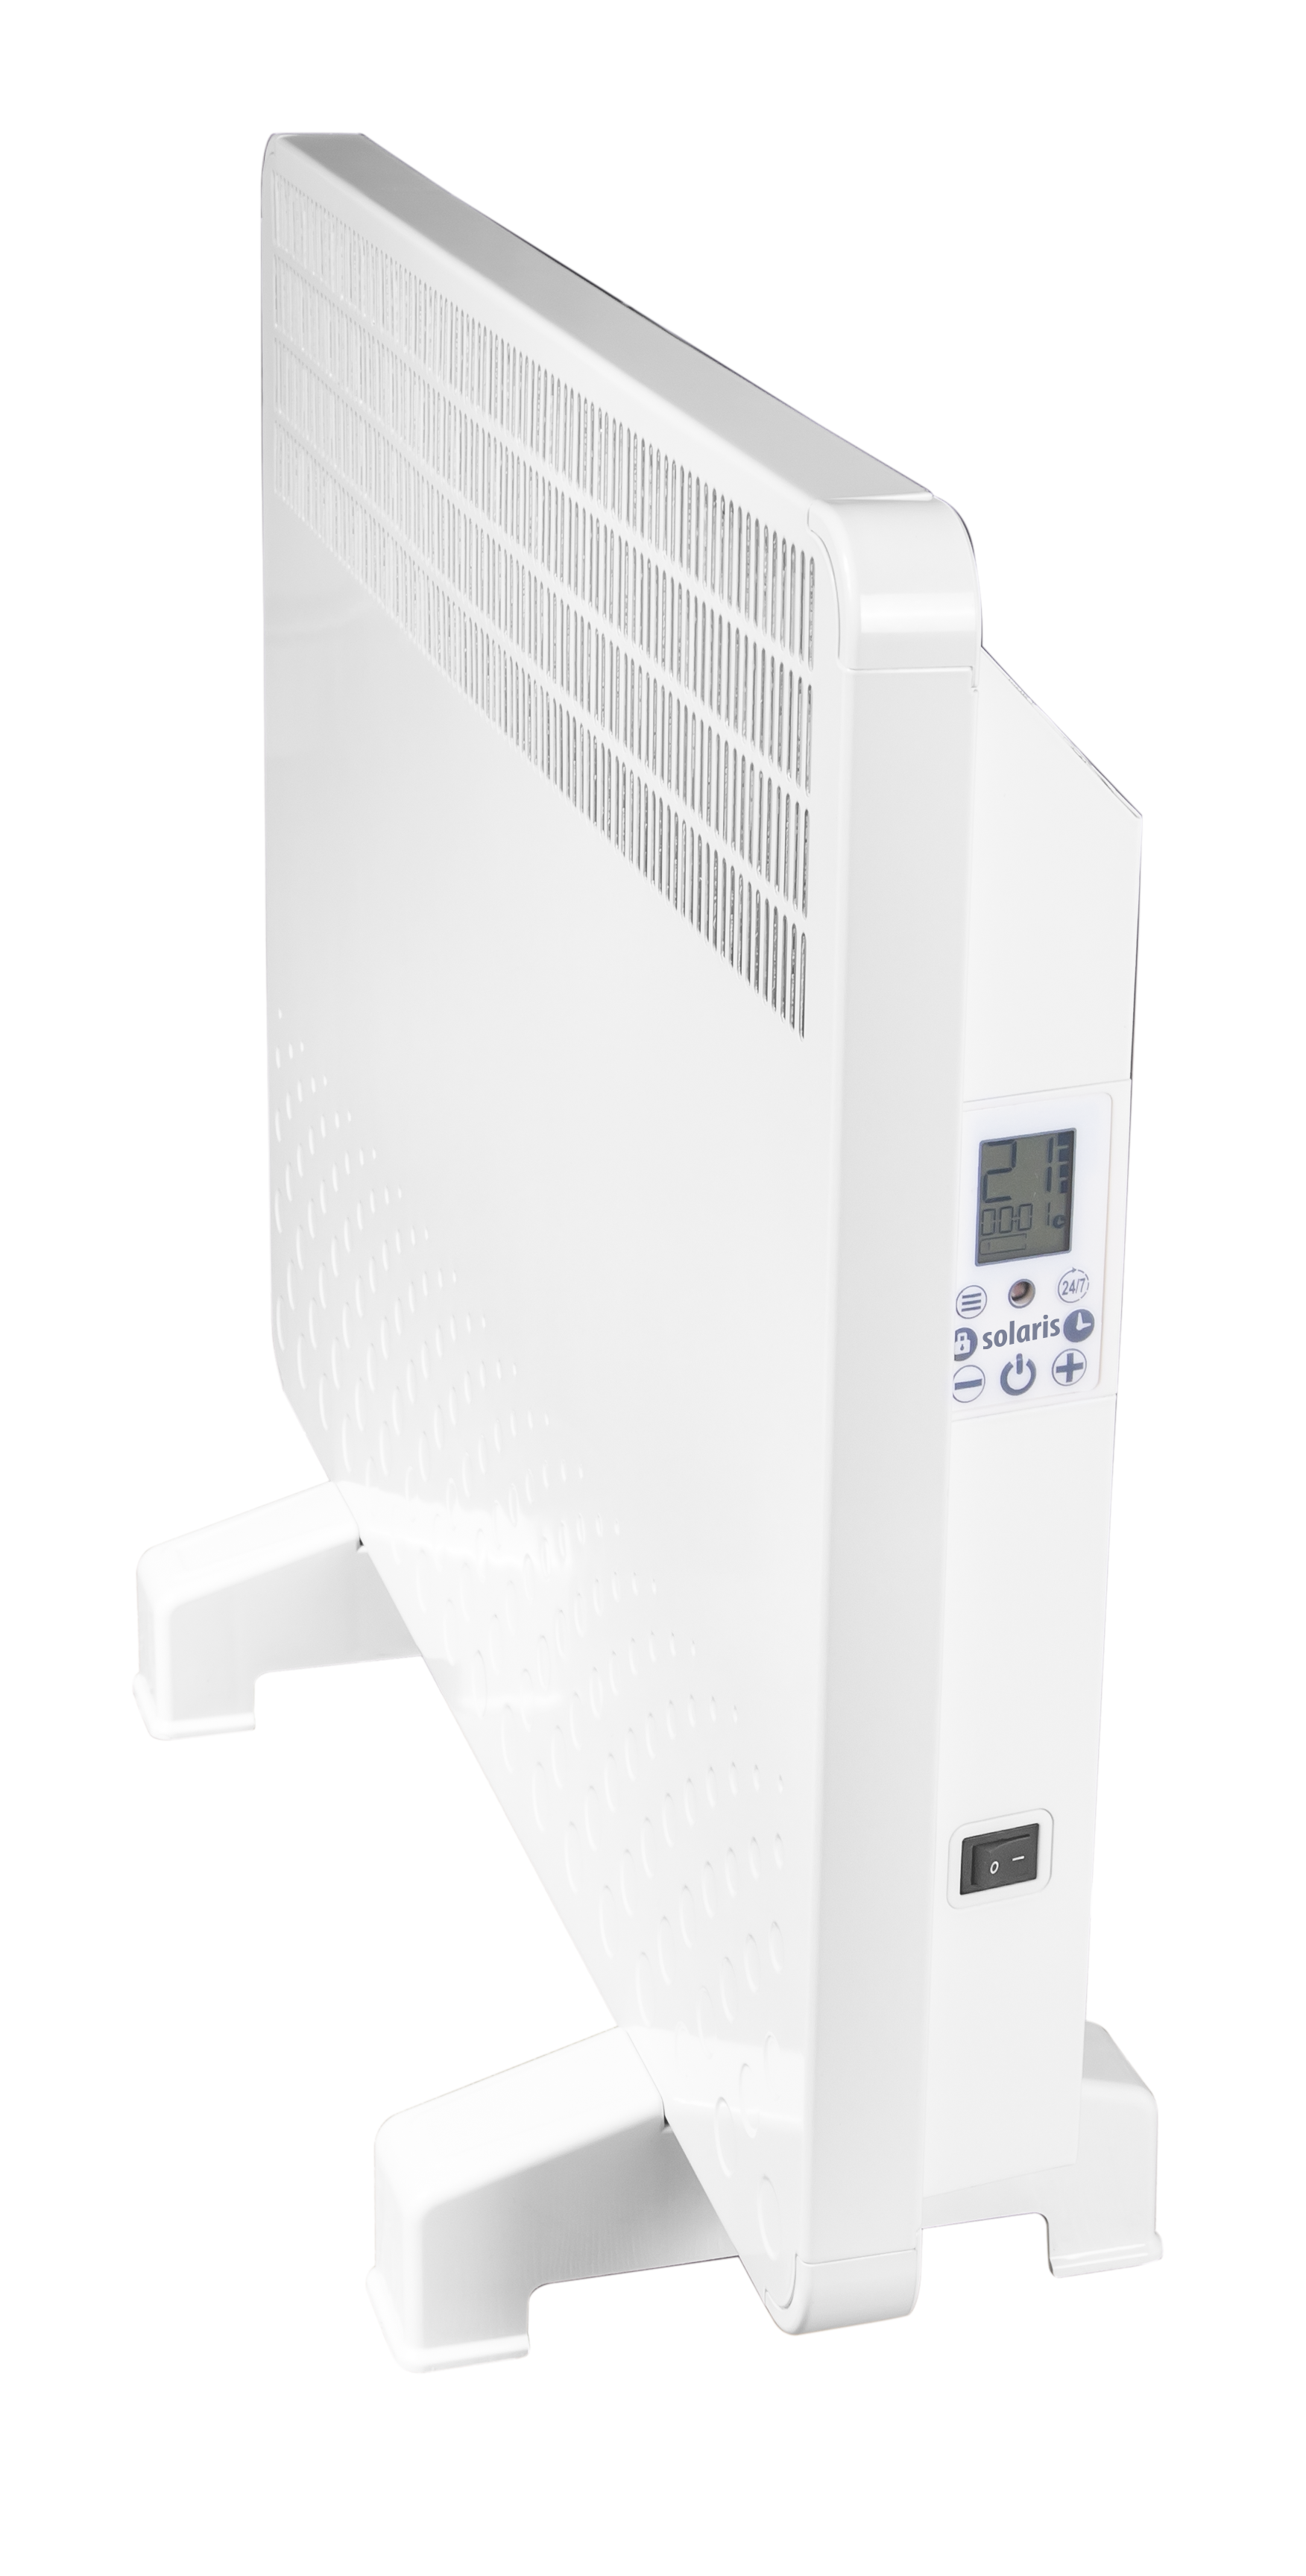 Convector electric de perete sau pardoseala Solaris KIP 1000 W, control electronic, Termostat de siguranta, termostat reglabil, IP 24, ERP 2018, pana la 12 mp 1000